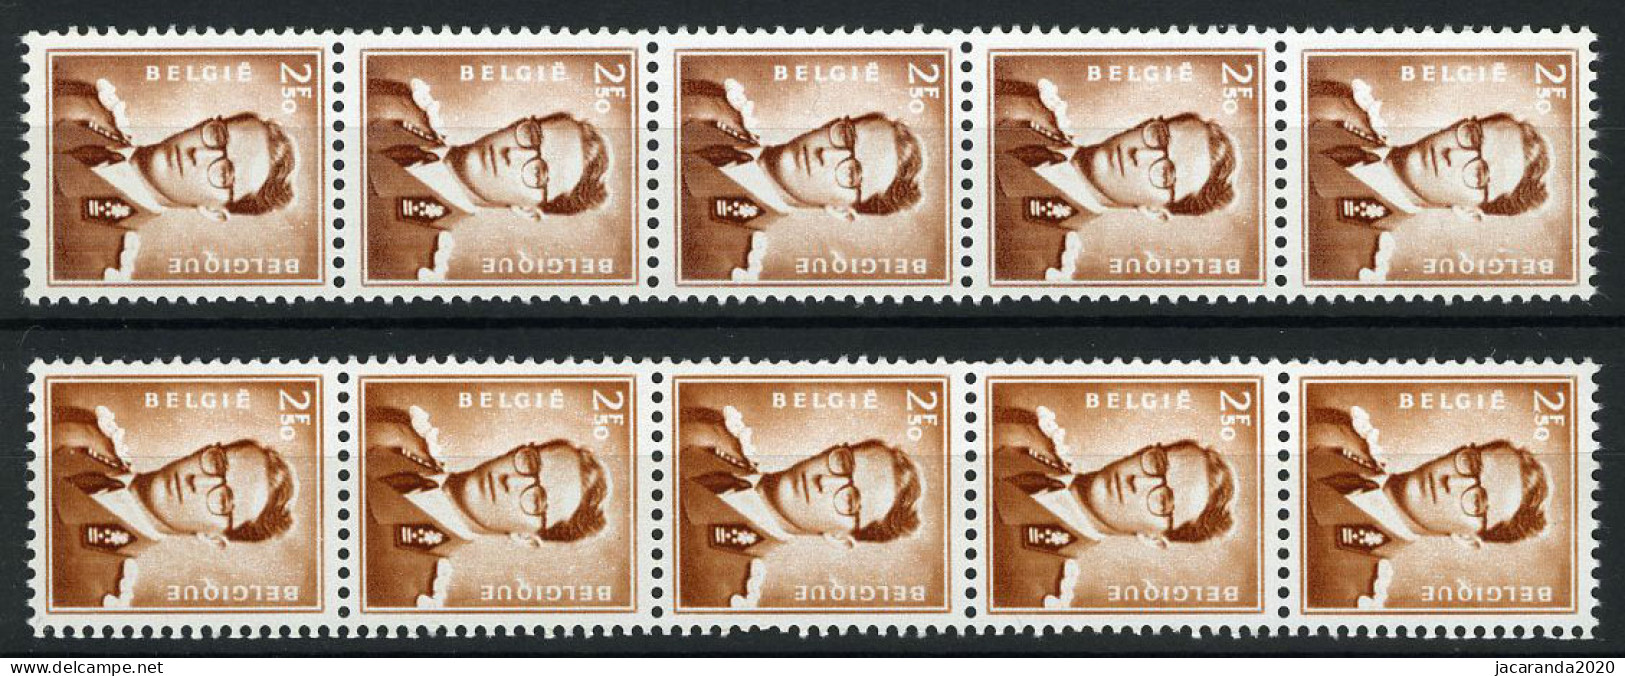 België R31 - Koning Boudewijn - 2,50 Bruin - Brun - Strook Van 5 Met Nummer - 2 Tinten Bruin - 2 Nuances De Couleur - Coil Stamps